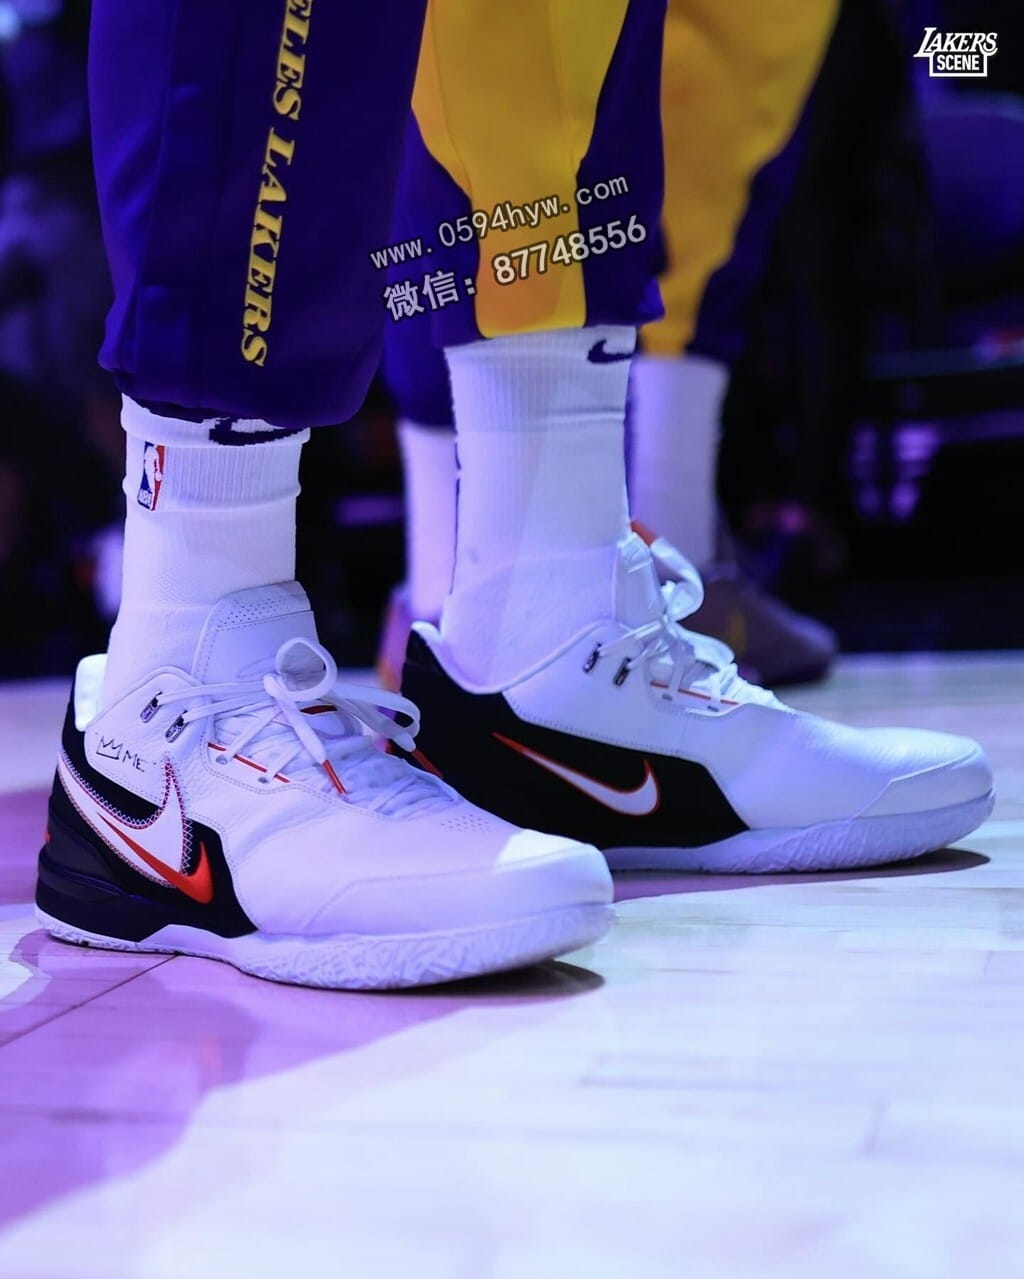 詹姆斯, 篮球鞋, Zoom LeBron NXXT Gen, Nike Air, NIKE, NBA战靴, First Game, Air Zoom - 网友普遍呼吁市场上推出詹姆斯的“出道纪念战靴”，该款鞋子的细节也公布了。